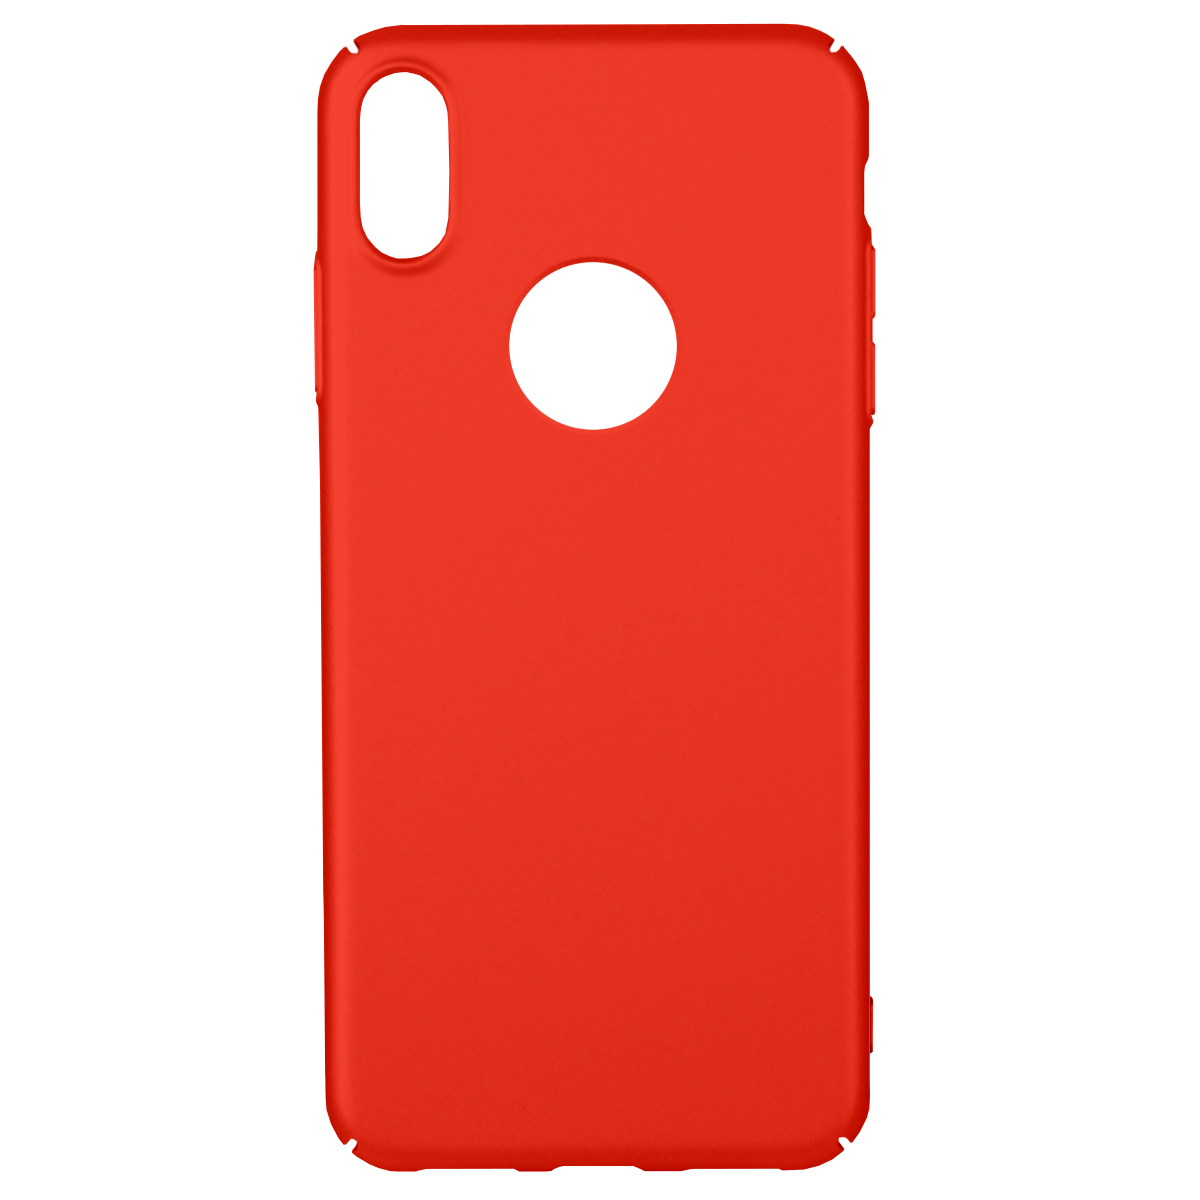 Ультратонкий пластиковый чехол Bruno Soft Touch для iPhone XS Max (Красный)